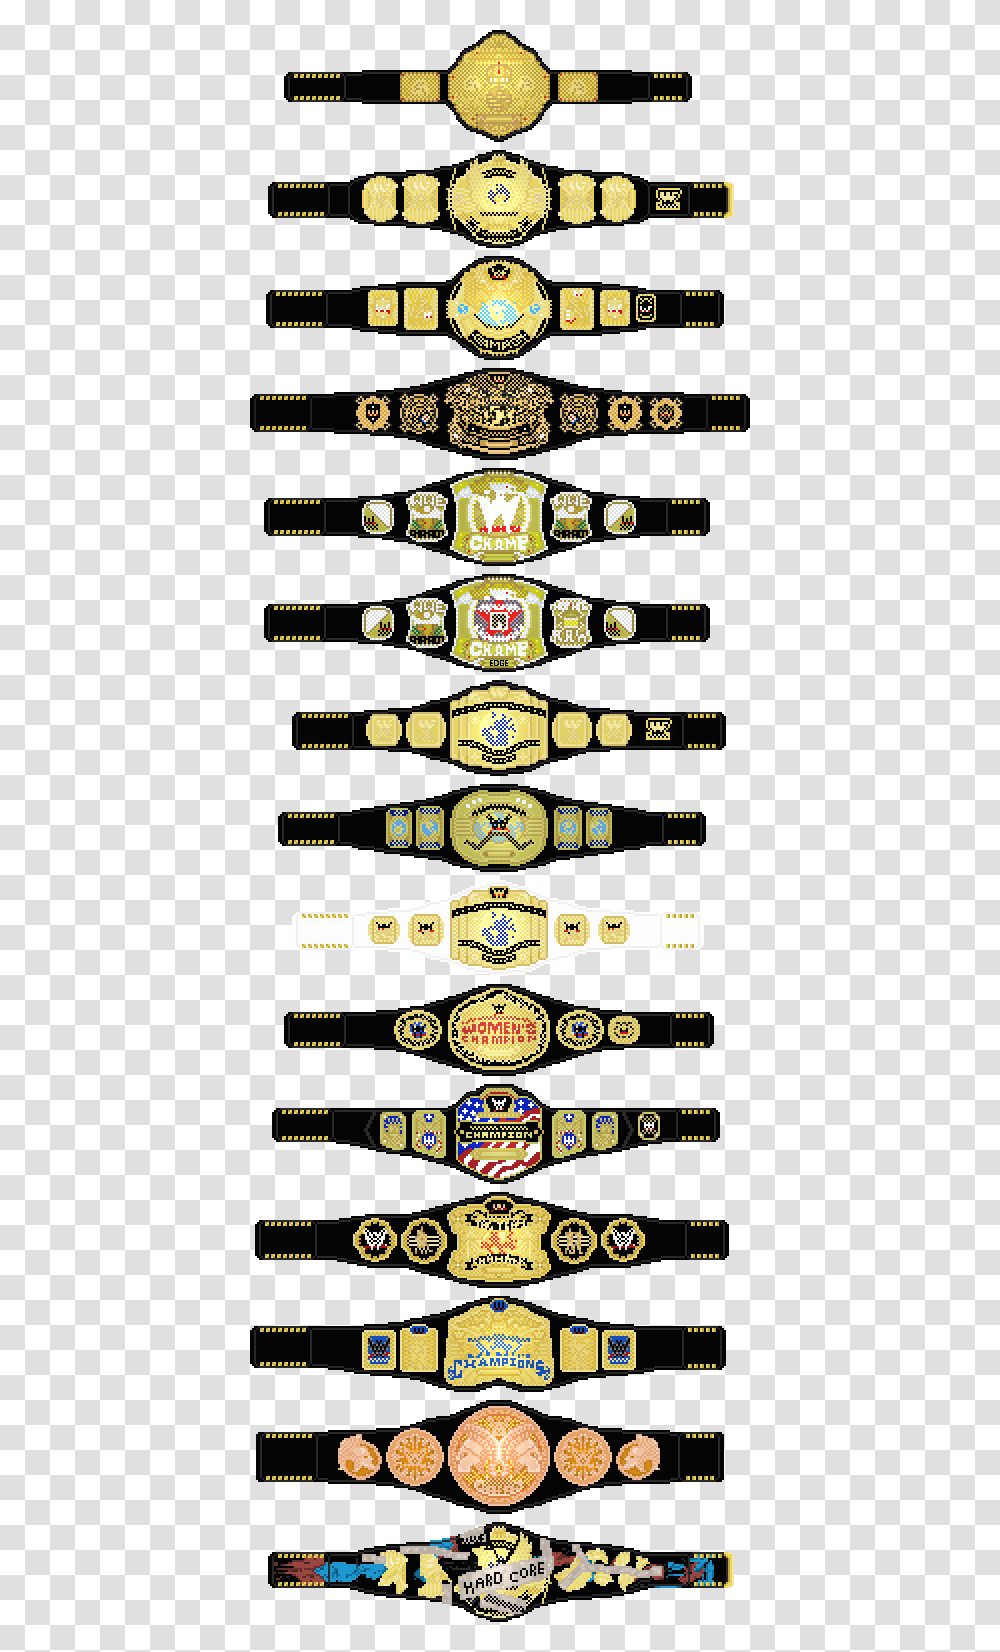 John Cenas 50 Greatest Matches Wwe Wwe Belt Pixel Art, Logo, Trademark, Wristwatch Transparent Png